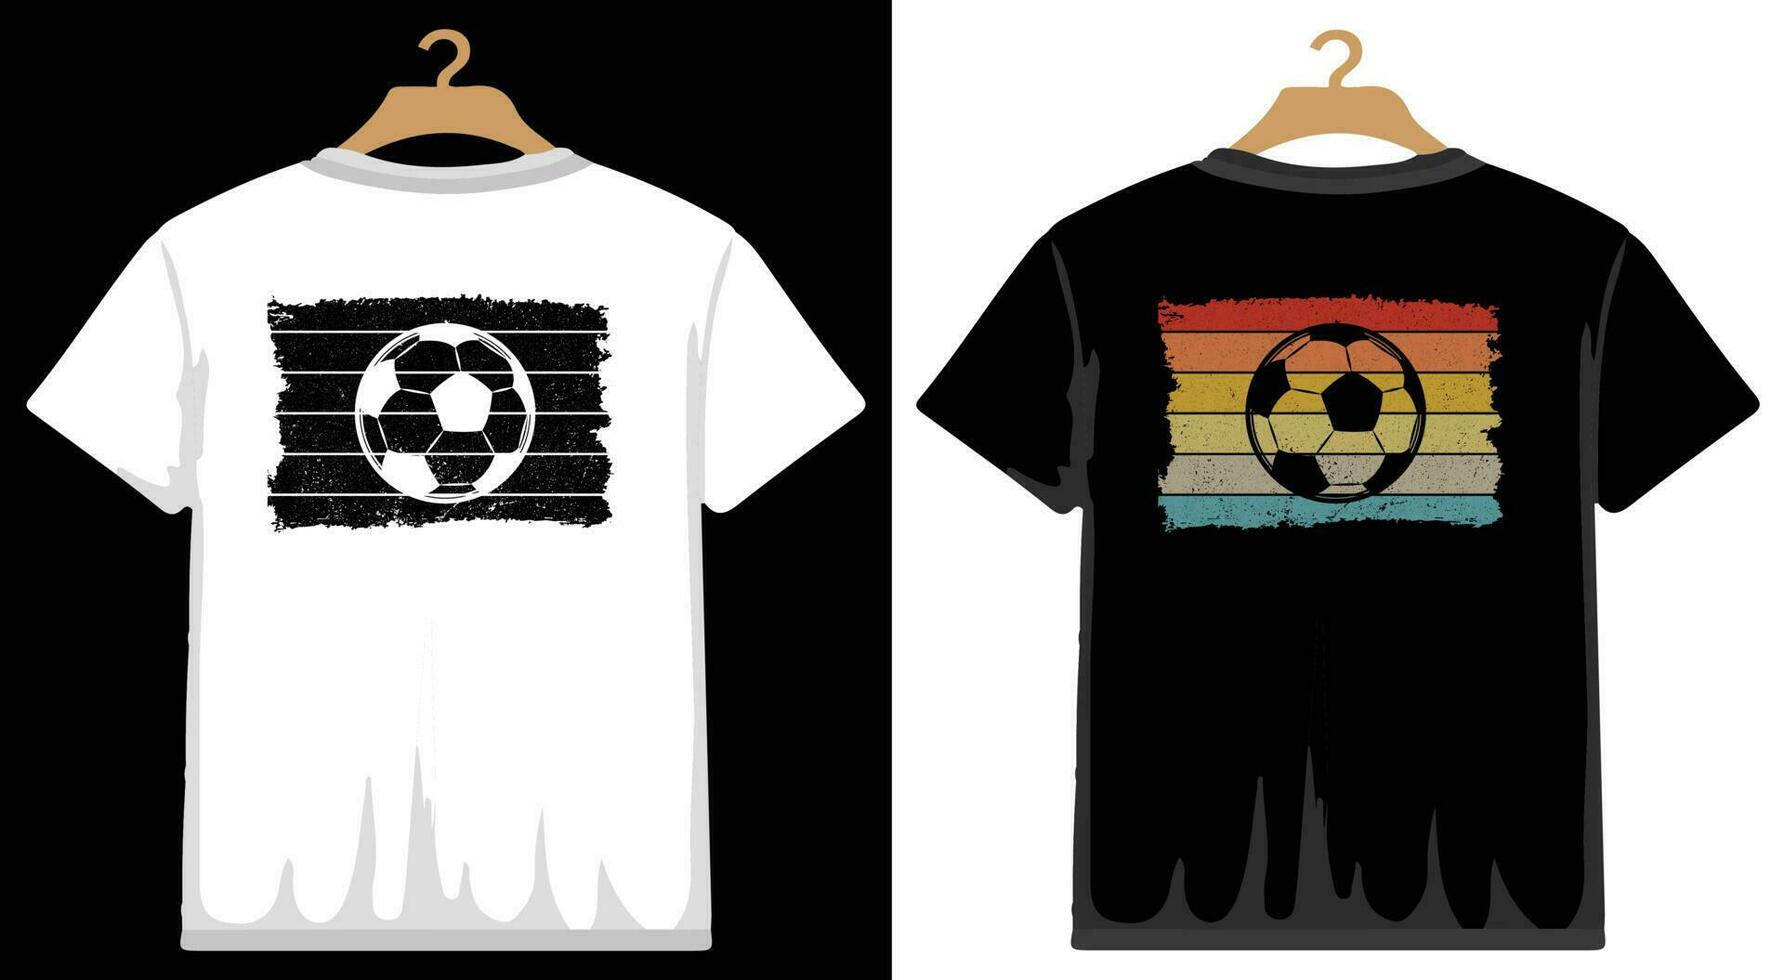 fotboll t skjorta design, vektor fotboll t skjorta design, fotboll skjorta, fotboll typografi t skjorta design